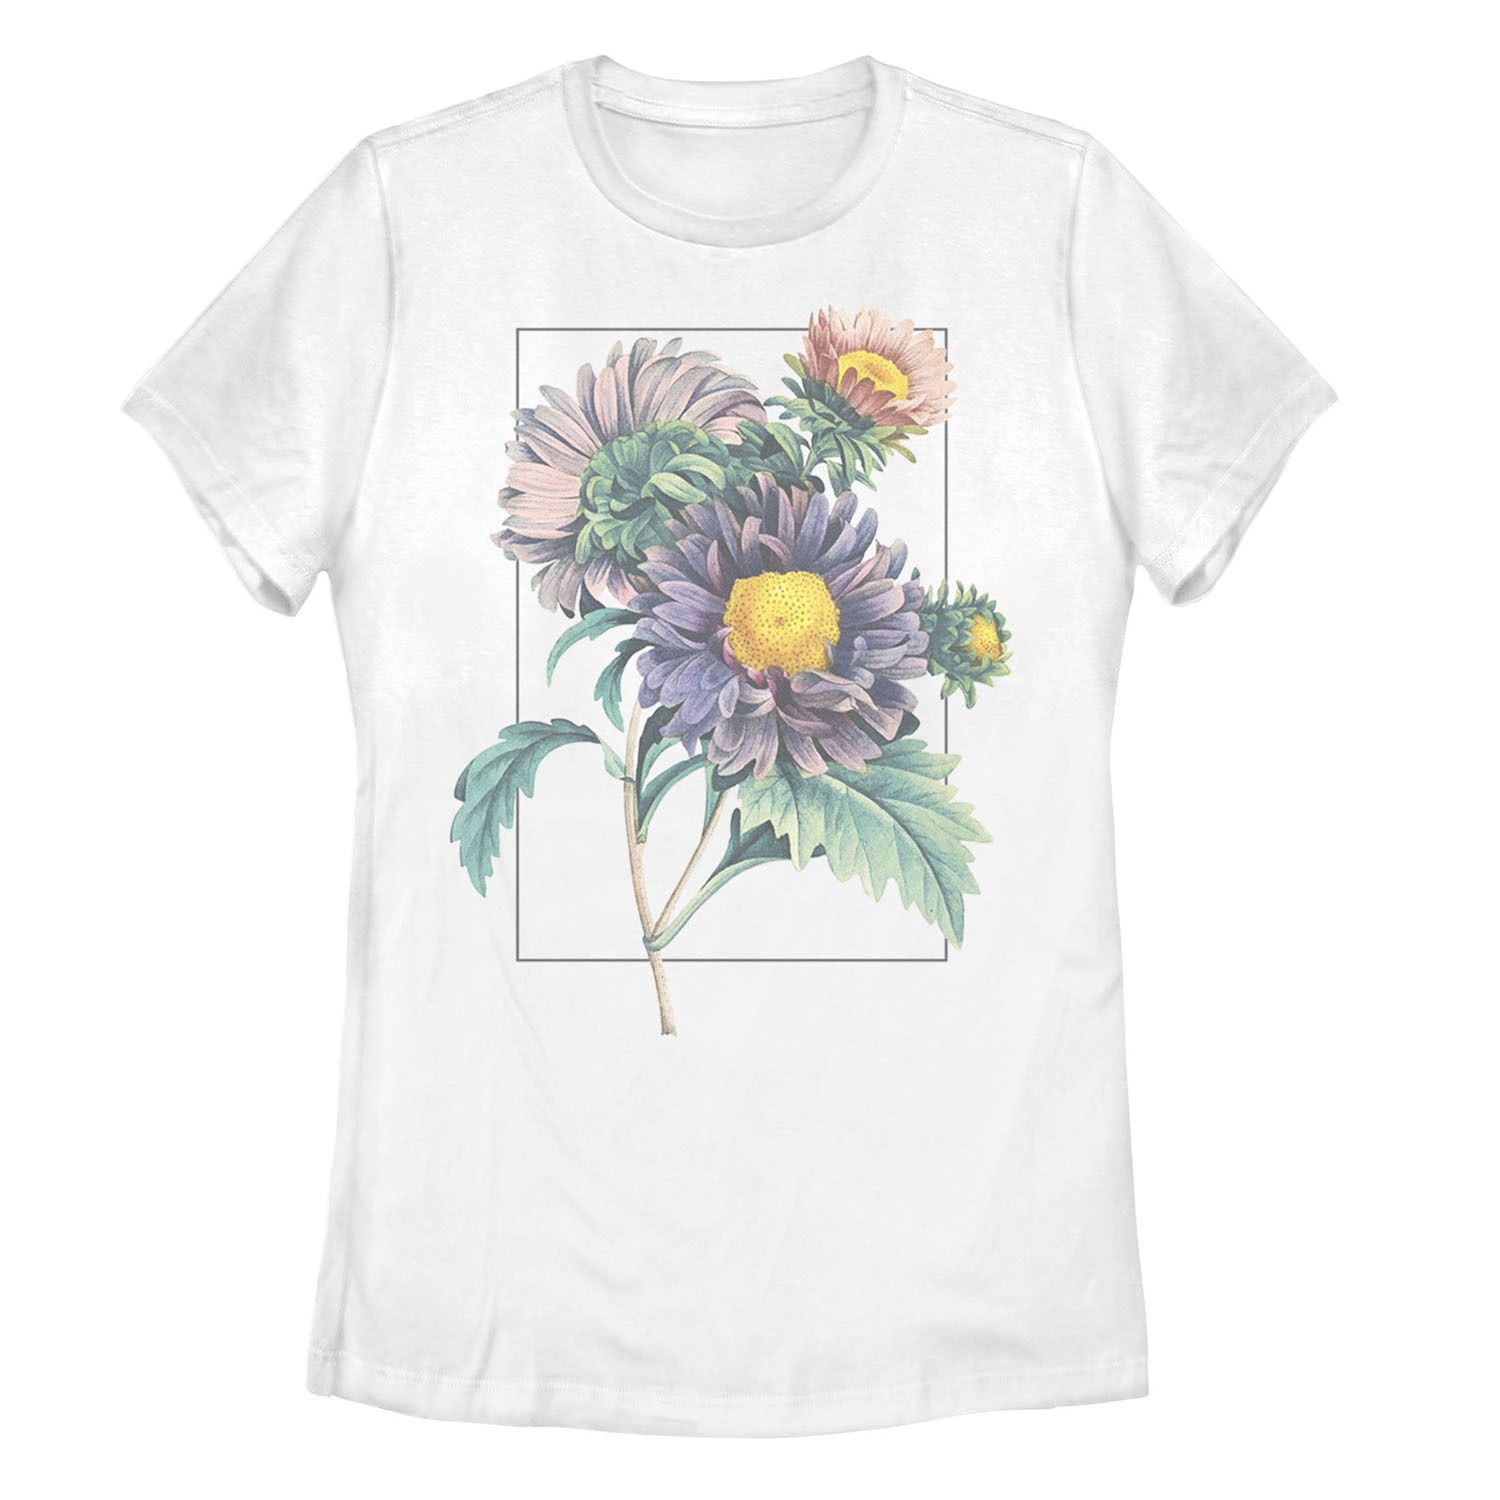 Детская футболка с рисунком весенних цветов в пастельных тонах